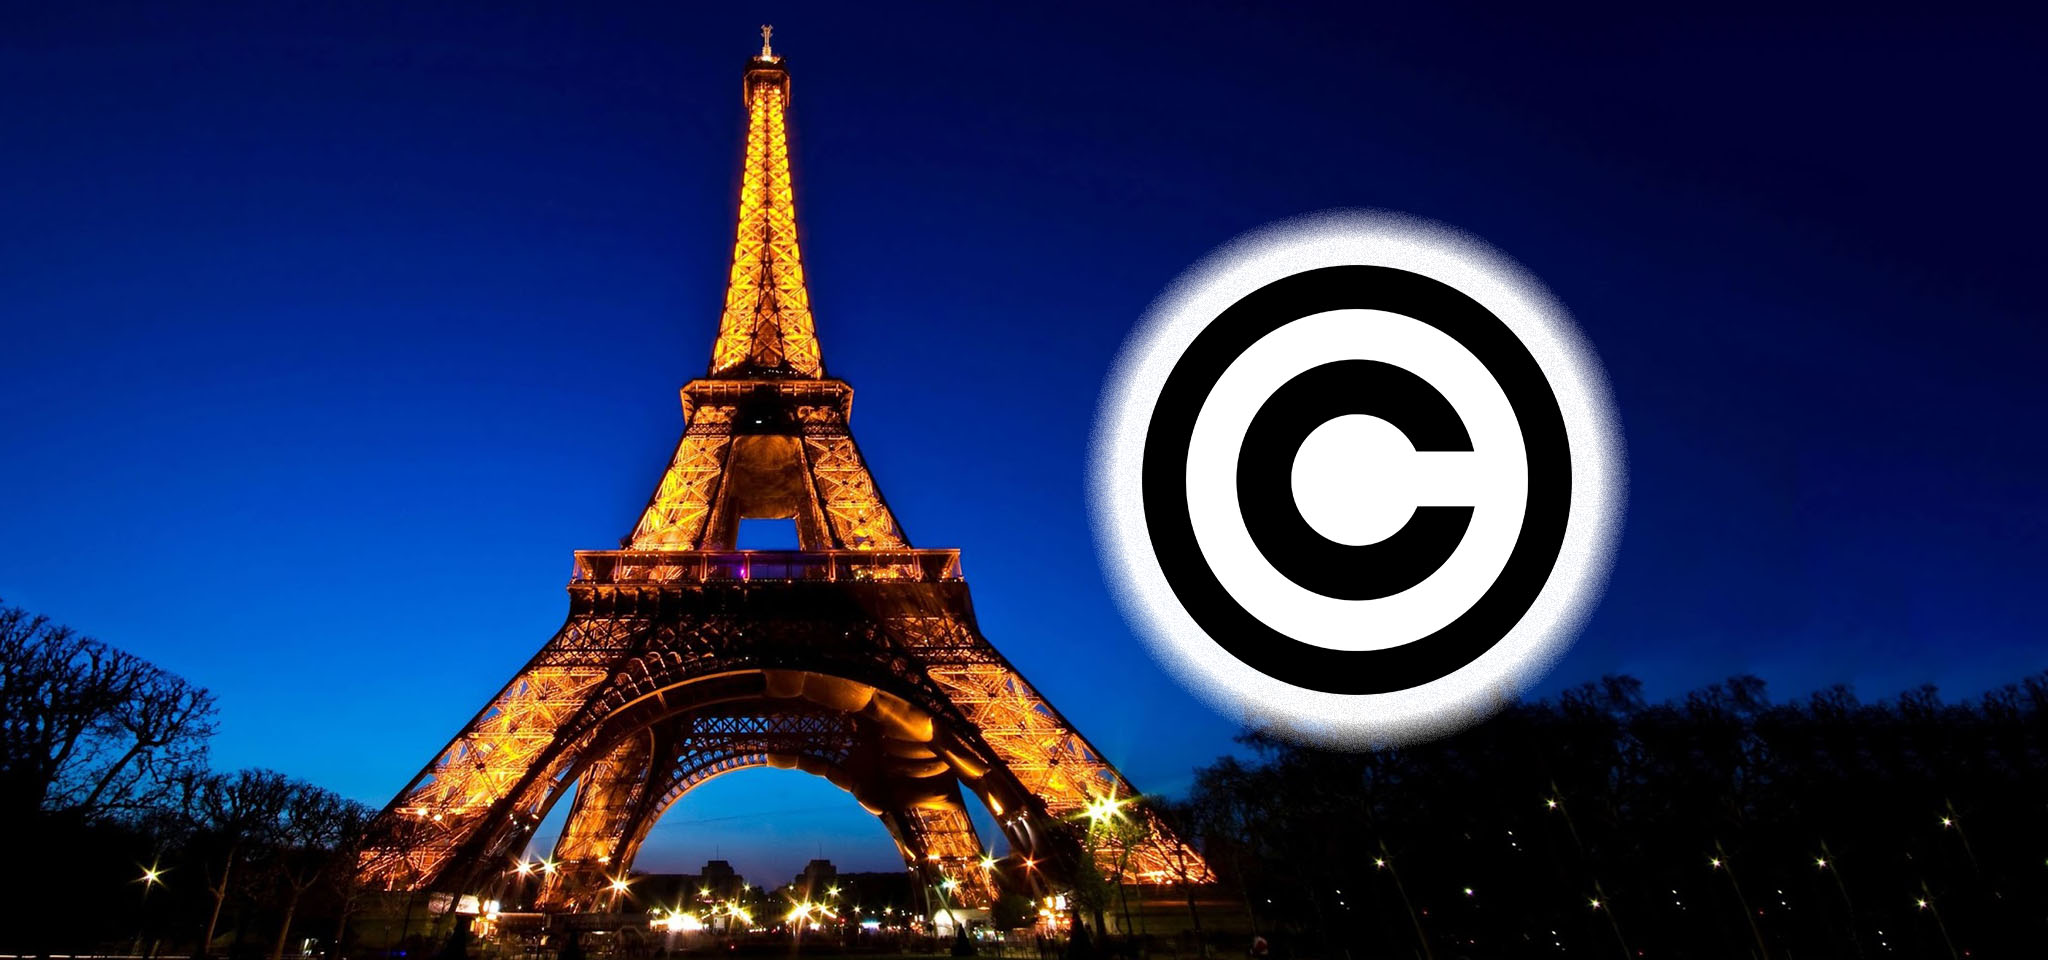 Chụp ảnh tháp Eiffel ban đêm trái phép có thể bị kiện ra toà